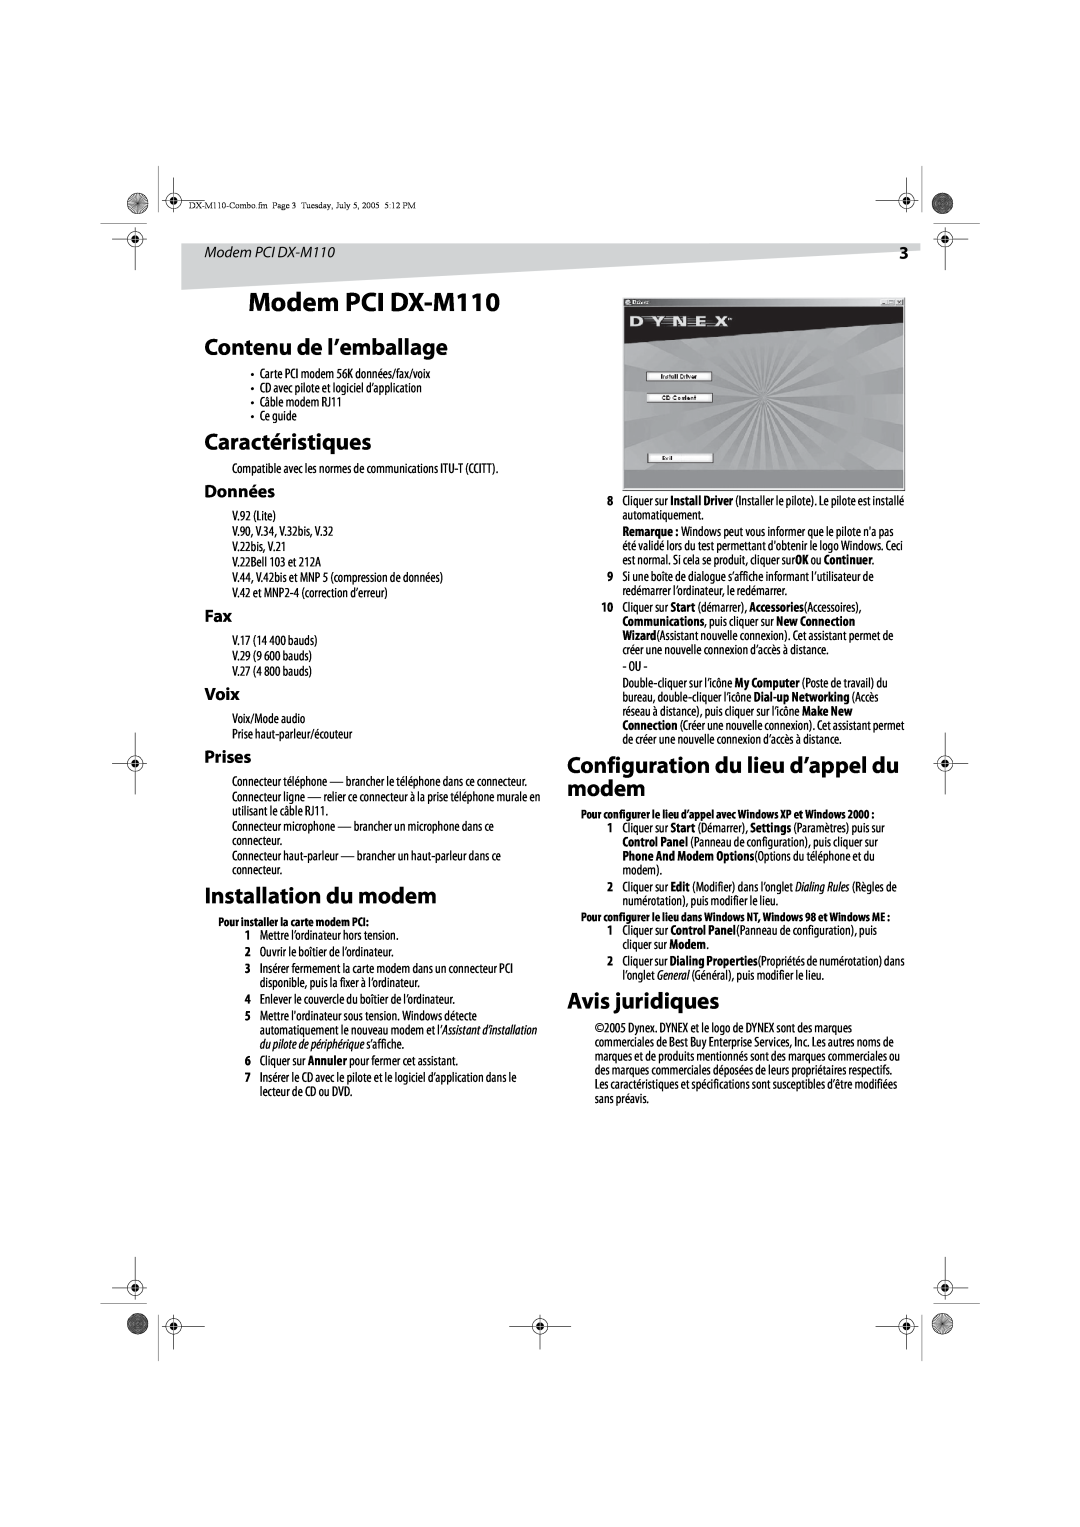 Dynex Modem PCI DX-M110, Contenu de l’emballage, Caractéristiques, Installation du modem, Avis juridiques, Données 